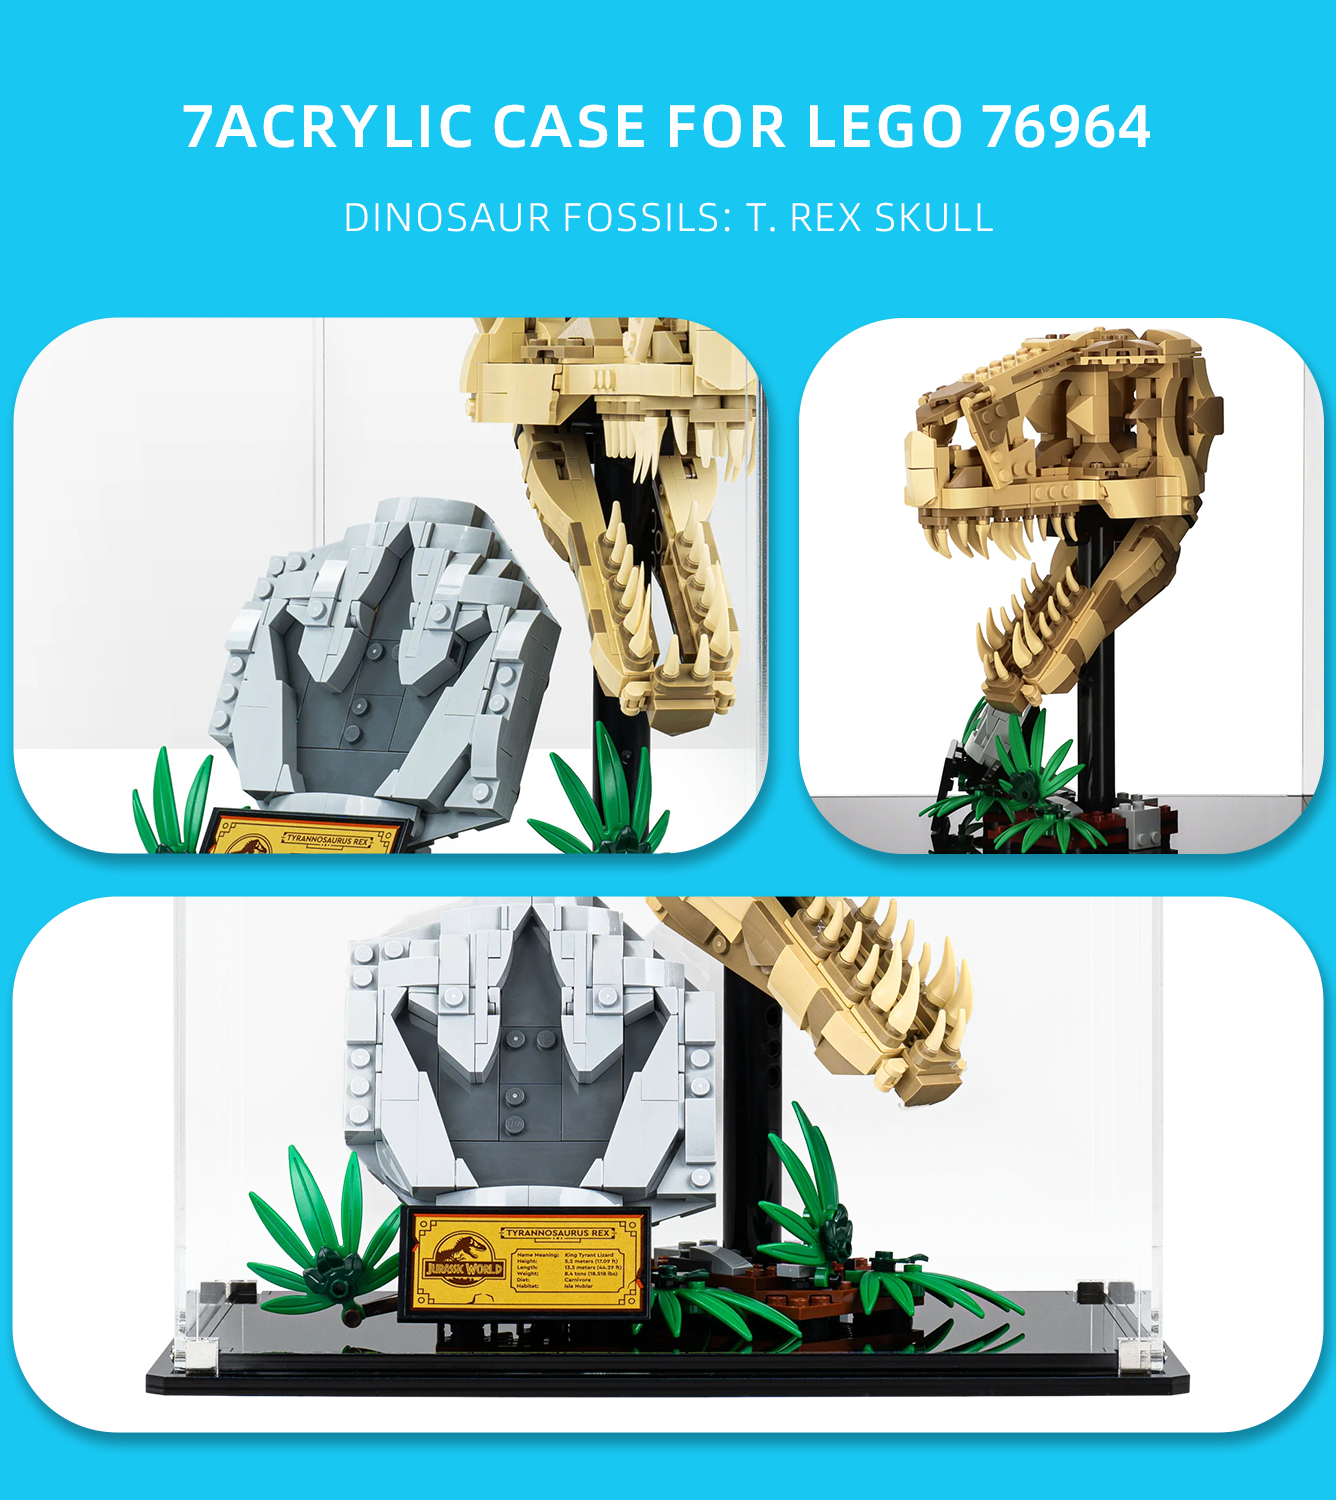 Display Case for Lego Dinosaur Fossils T. rex Skull 76964